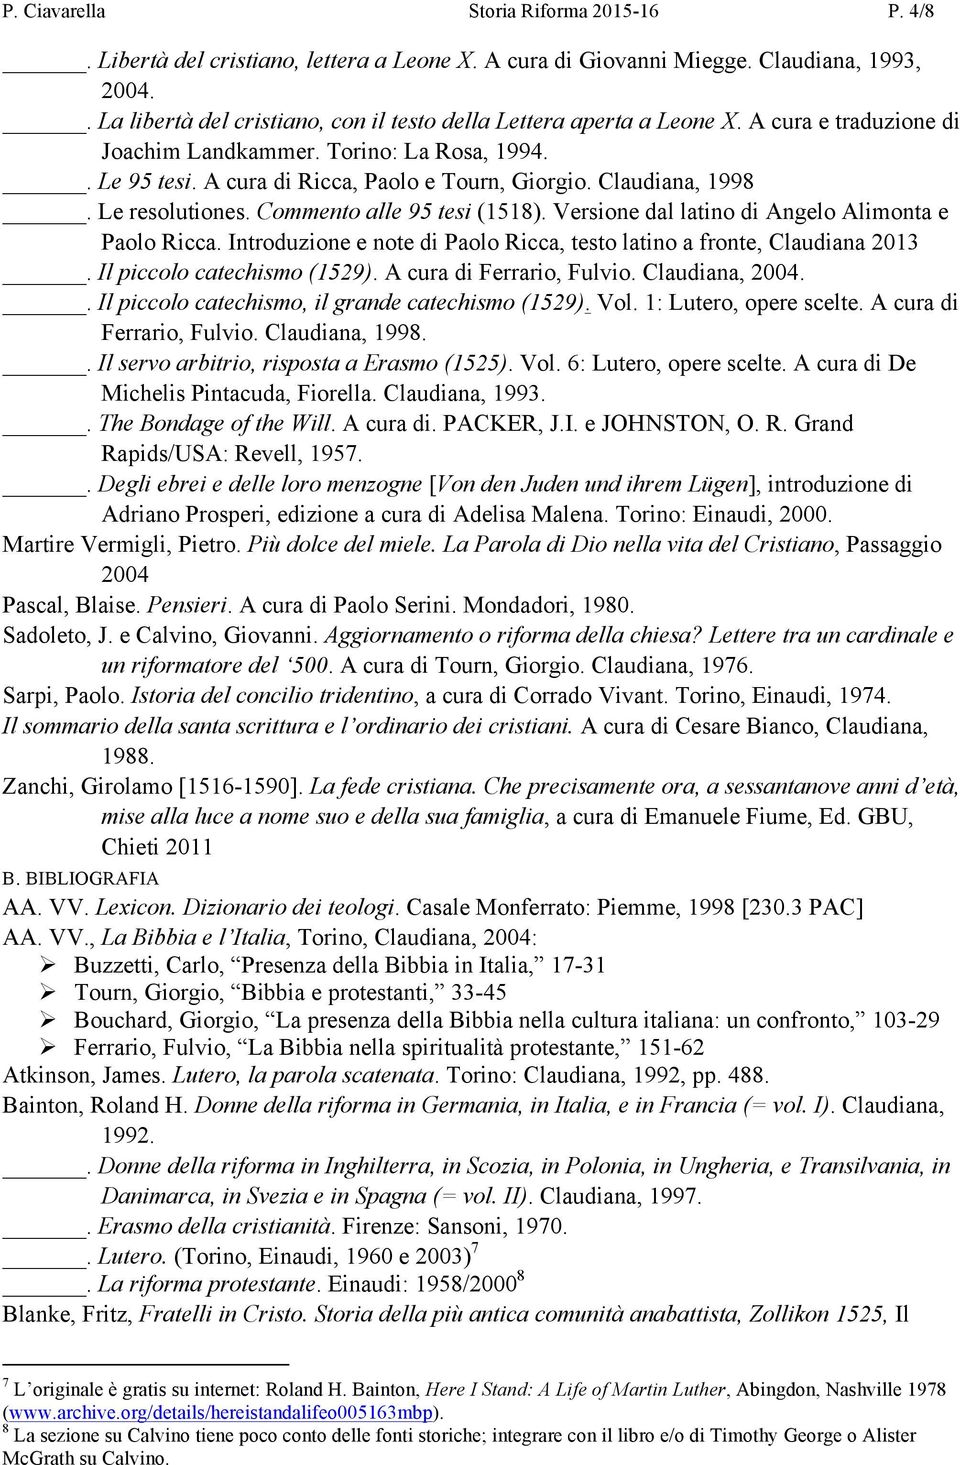 Claudiana, 1998. Le resolutiones. Commento alle 95 tesi (1518). Versione dal latino di Angelo Alimonta e Paolo Ricca. Introduzione e note di Paolo Ricca, testo latino a fronte, Claudiana 2013.